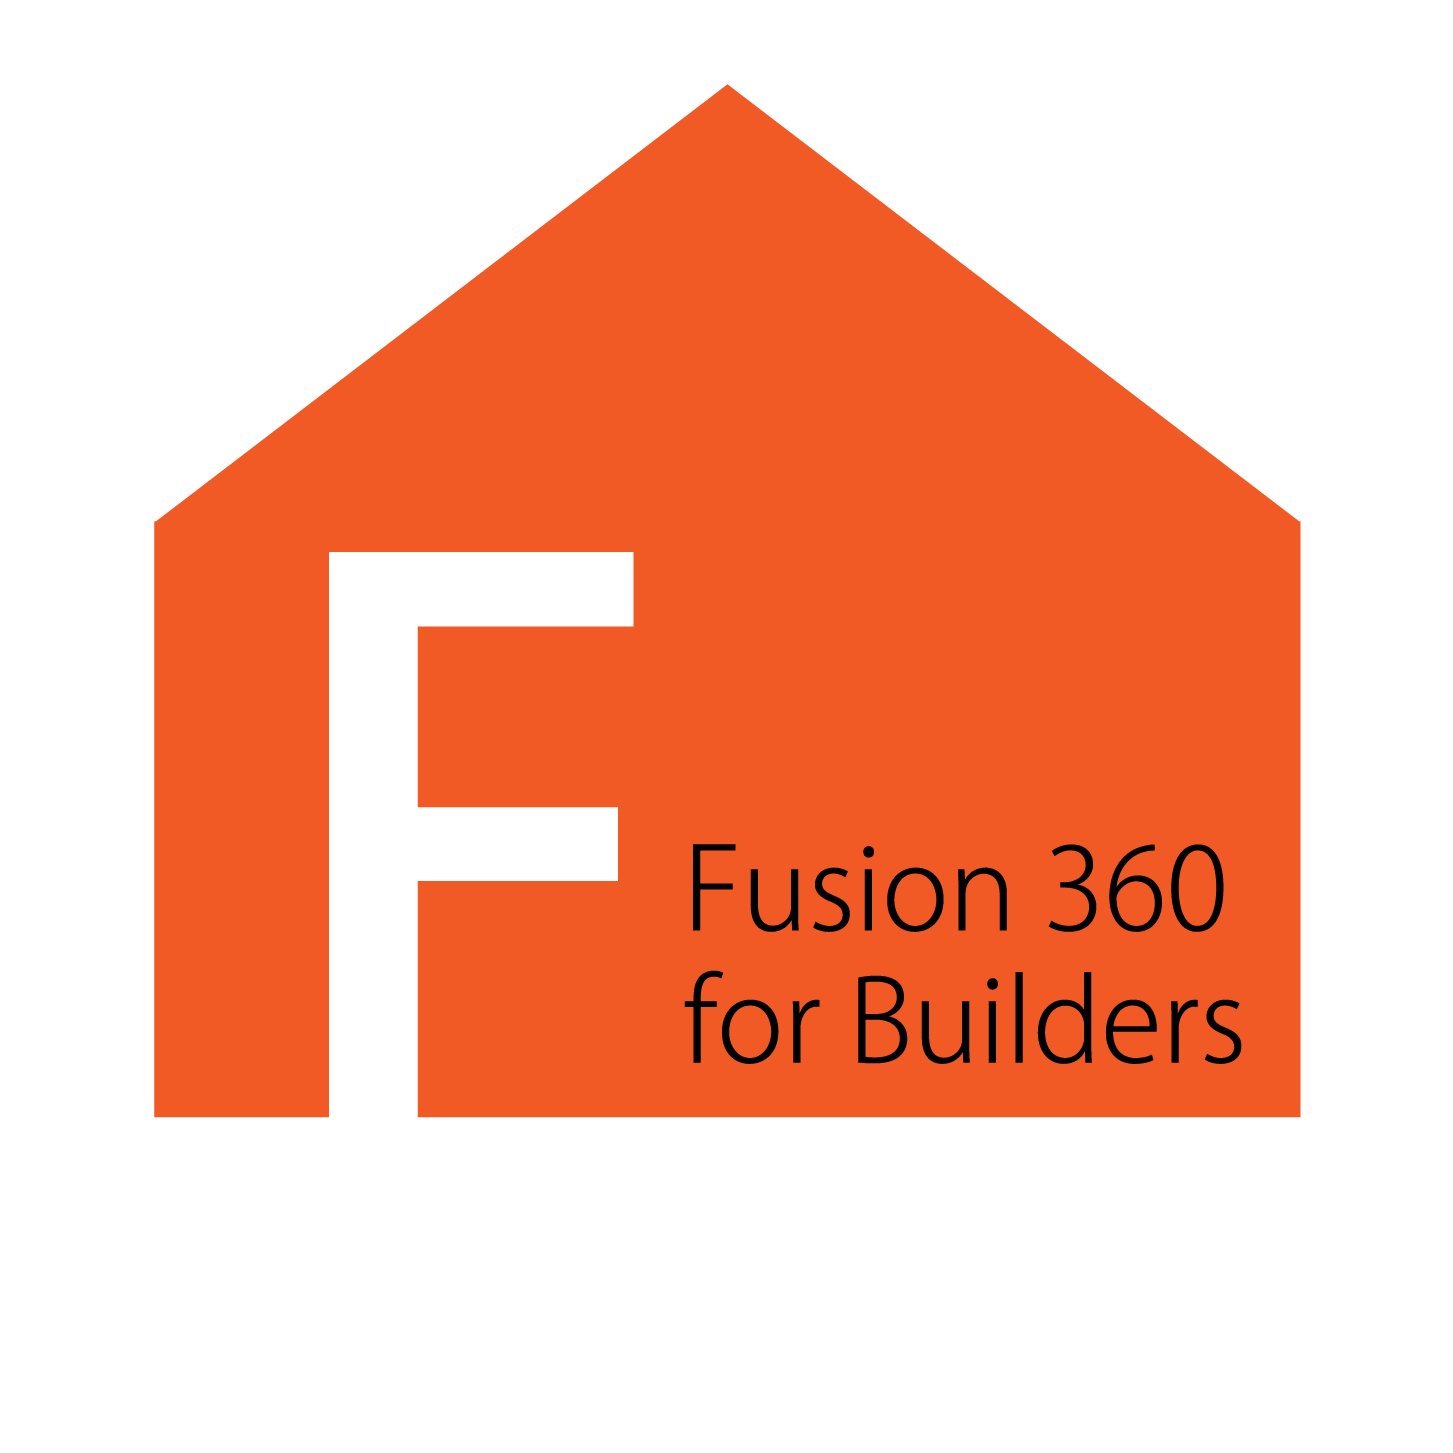 住むをもっと創ろう！
私たちは、小さな工務店のための、
オンラインスクール
『FABITA Small Builders Academy』
です。
このアカウントでは、工務店業務にAutodesk fusion360を活用するテクニックを動画を交えて紹介しています。